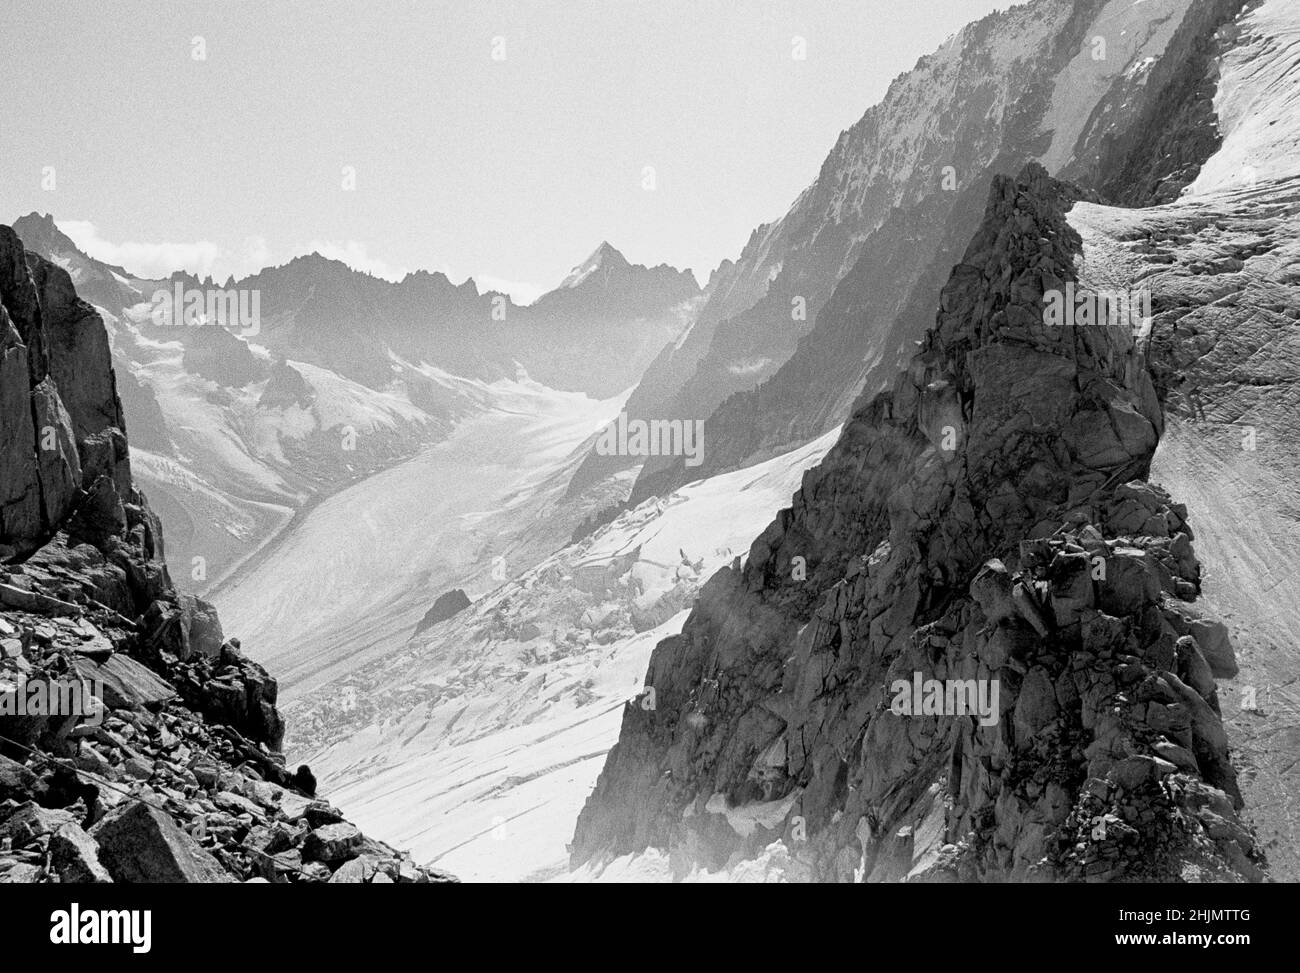 Schwarz-weiß-Foto von zerklüfteten Felsen, Berggipfeln und Gletschertal, Les Grands Montets, Chamonix, Französische Alpen, Frankreich, Europa, 2009. Stockfoto